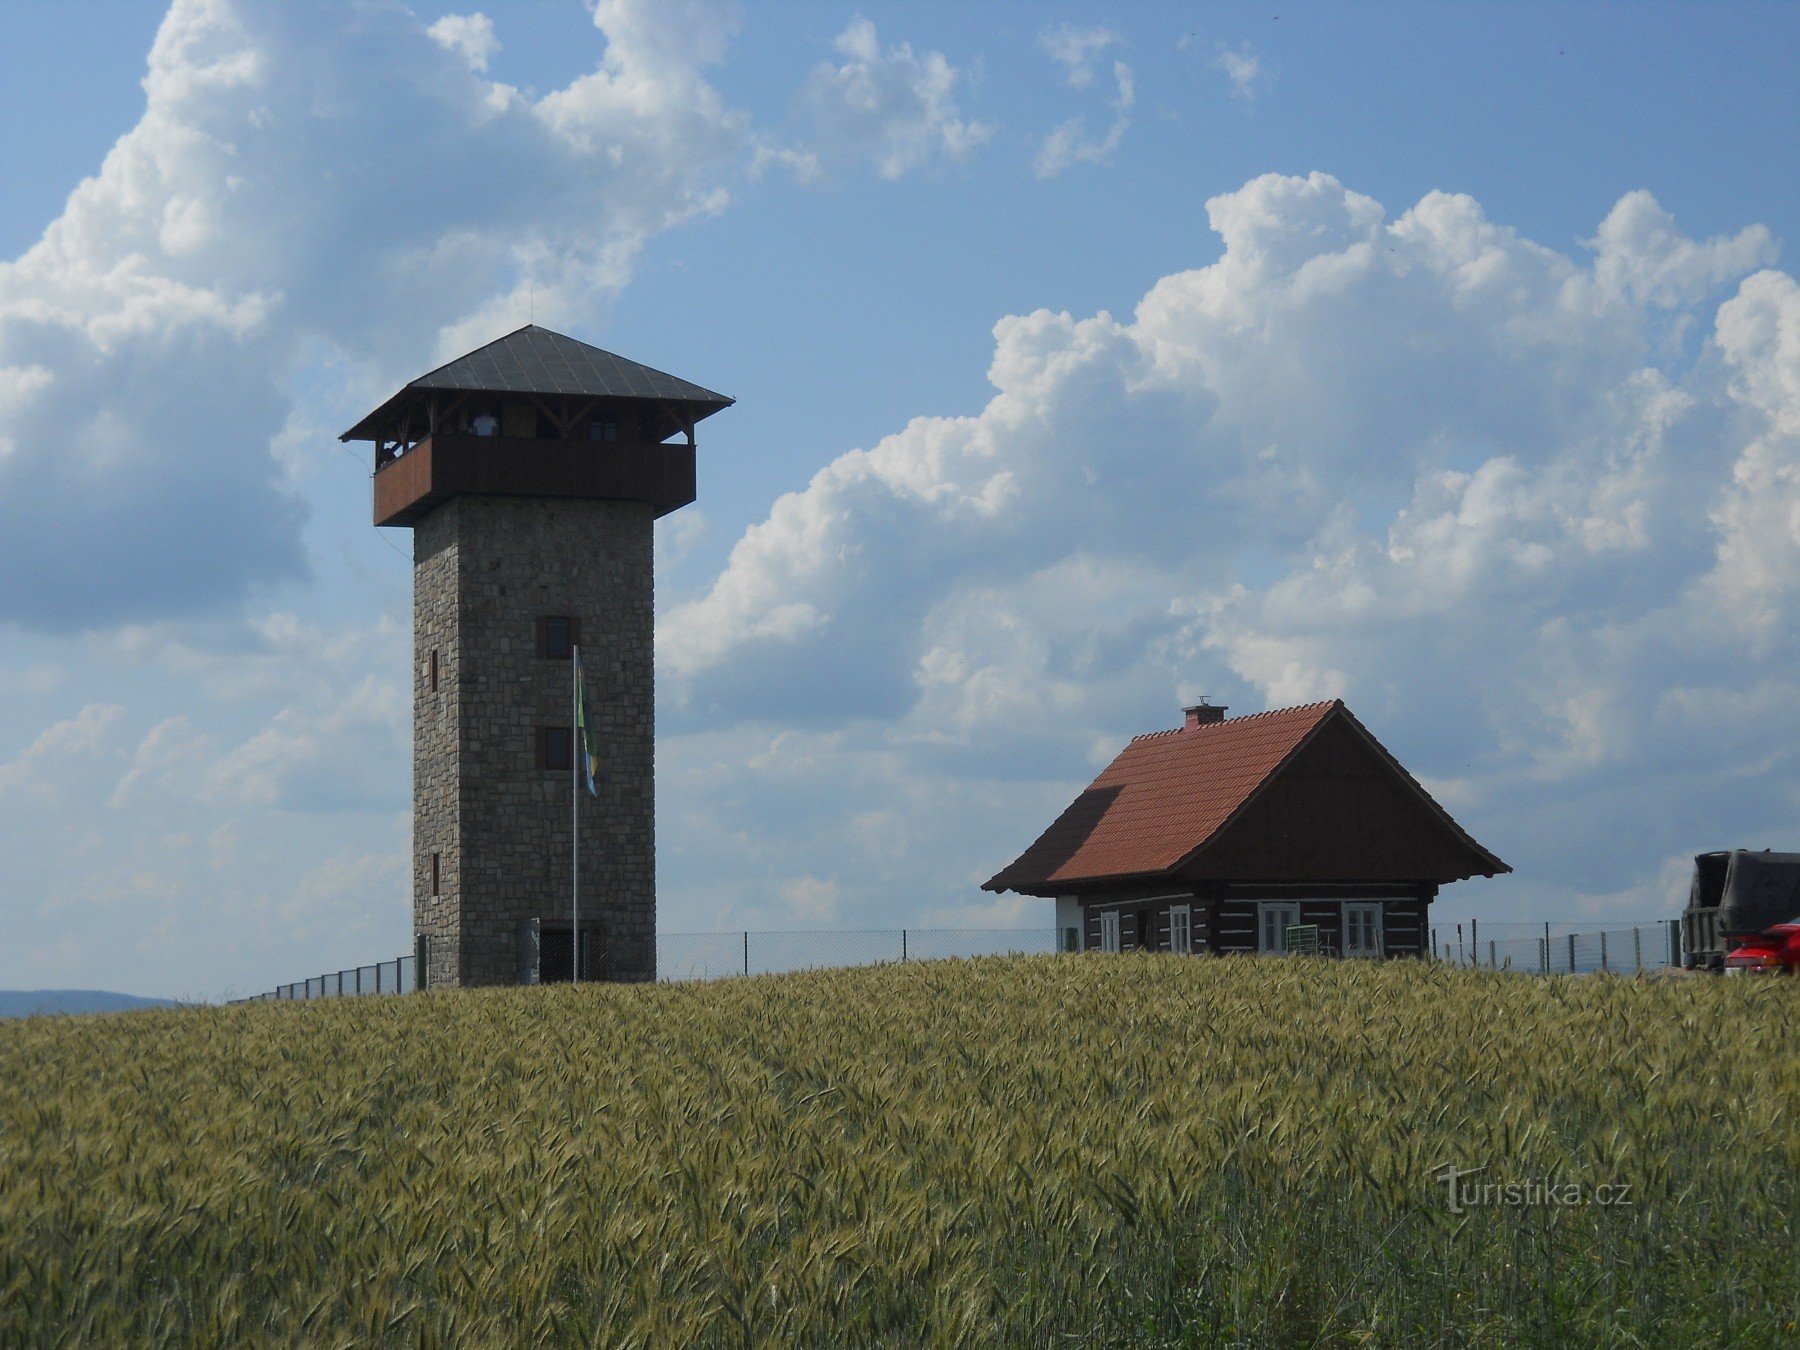 Spełnienie marzeń z dzieciństwa – wieża widokowa U borovice